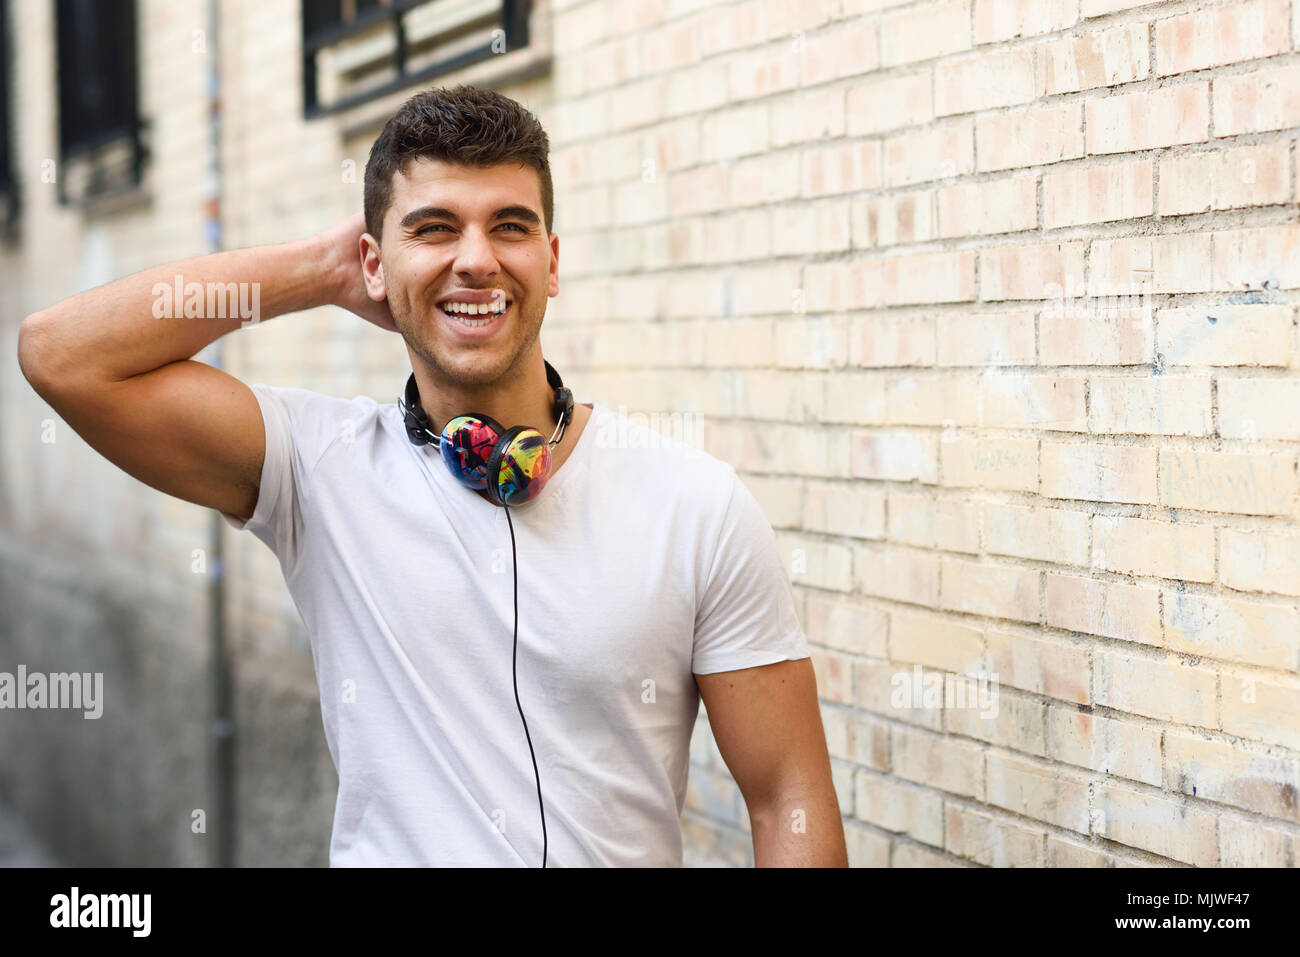 Retrato de joven en el contexto urbano de escuchar música con auriculares. Vestían camiseta blanca cerca de una pared de ladrillo Foto de stock